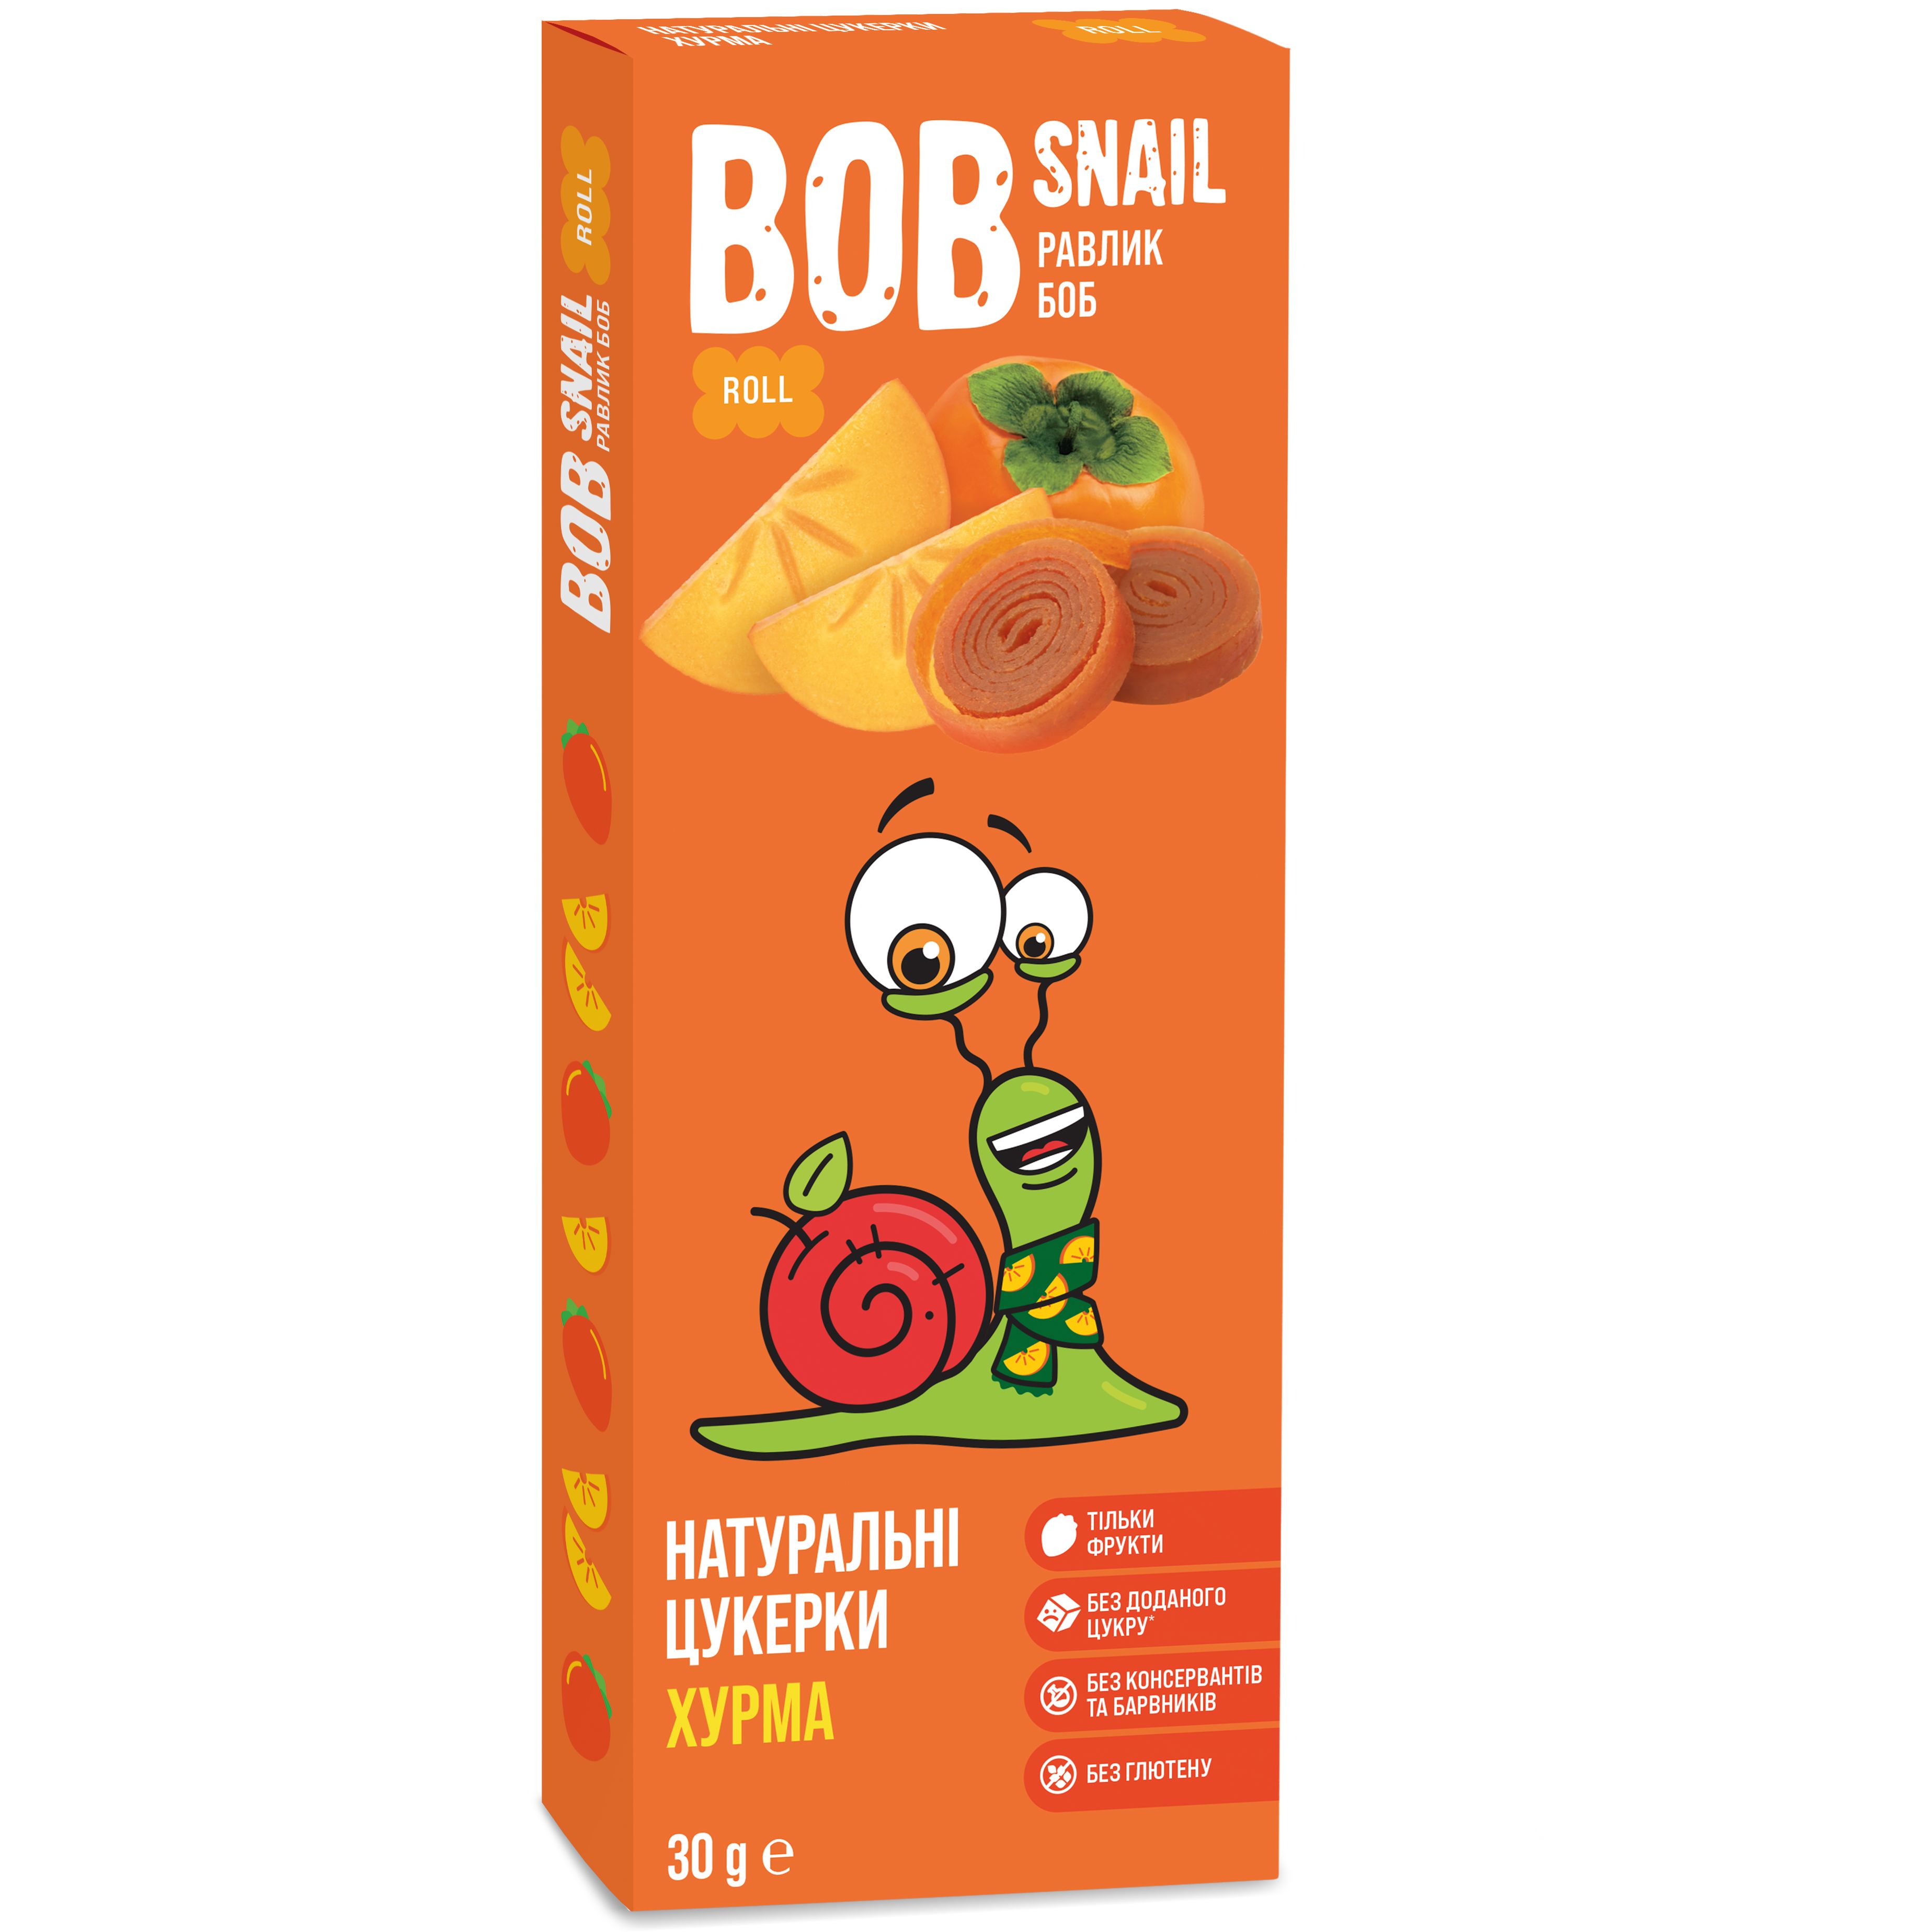 Фруктовые конфеты Bob Snail из Хурмы 30 г - фото 1